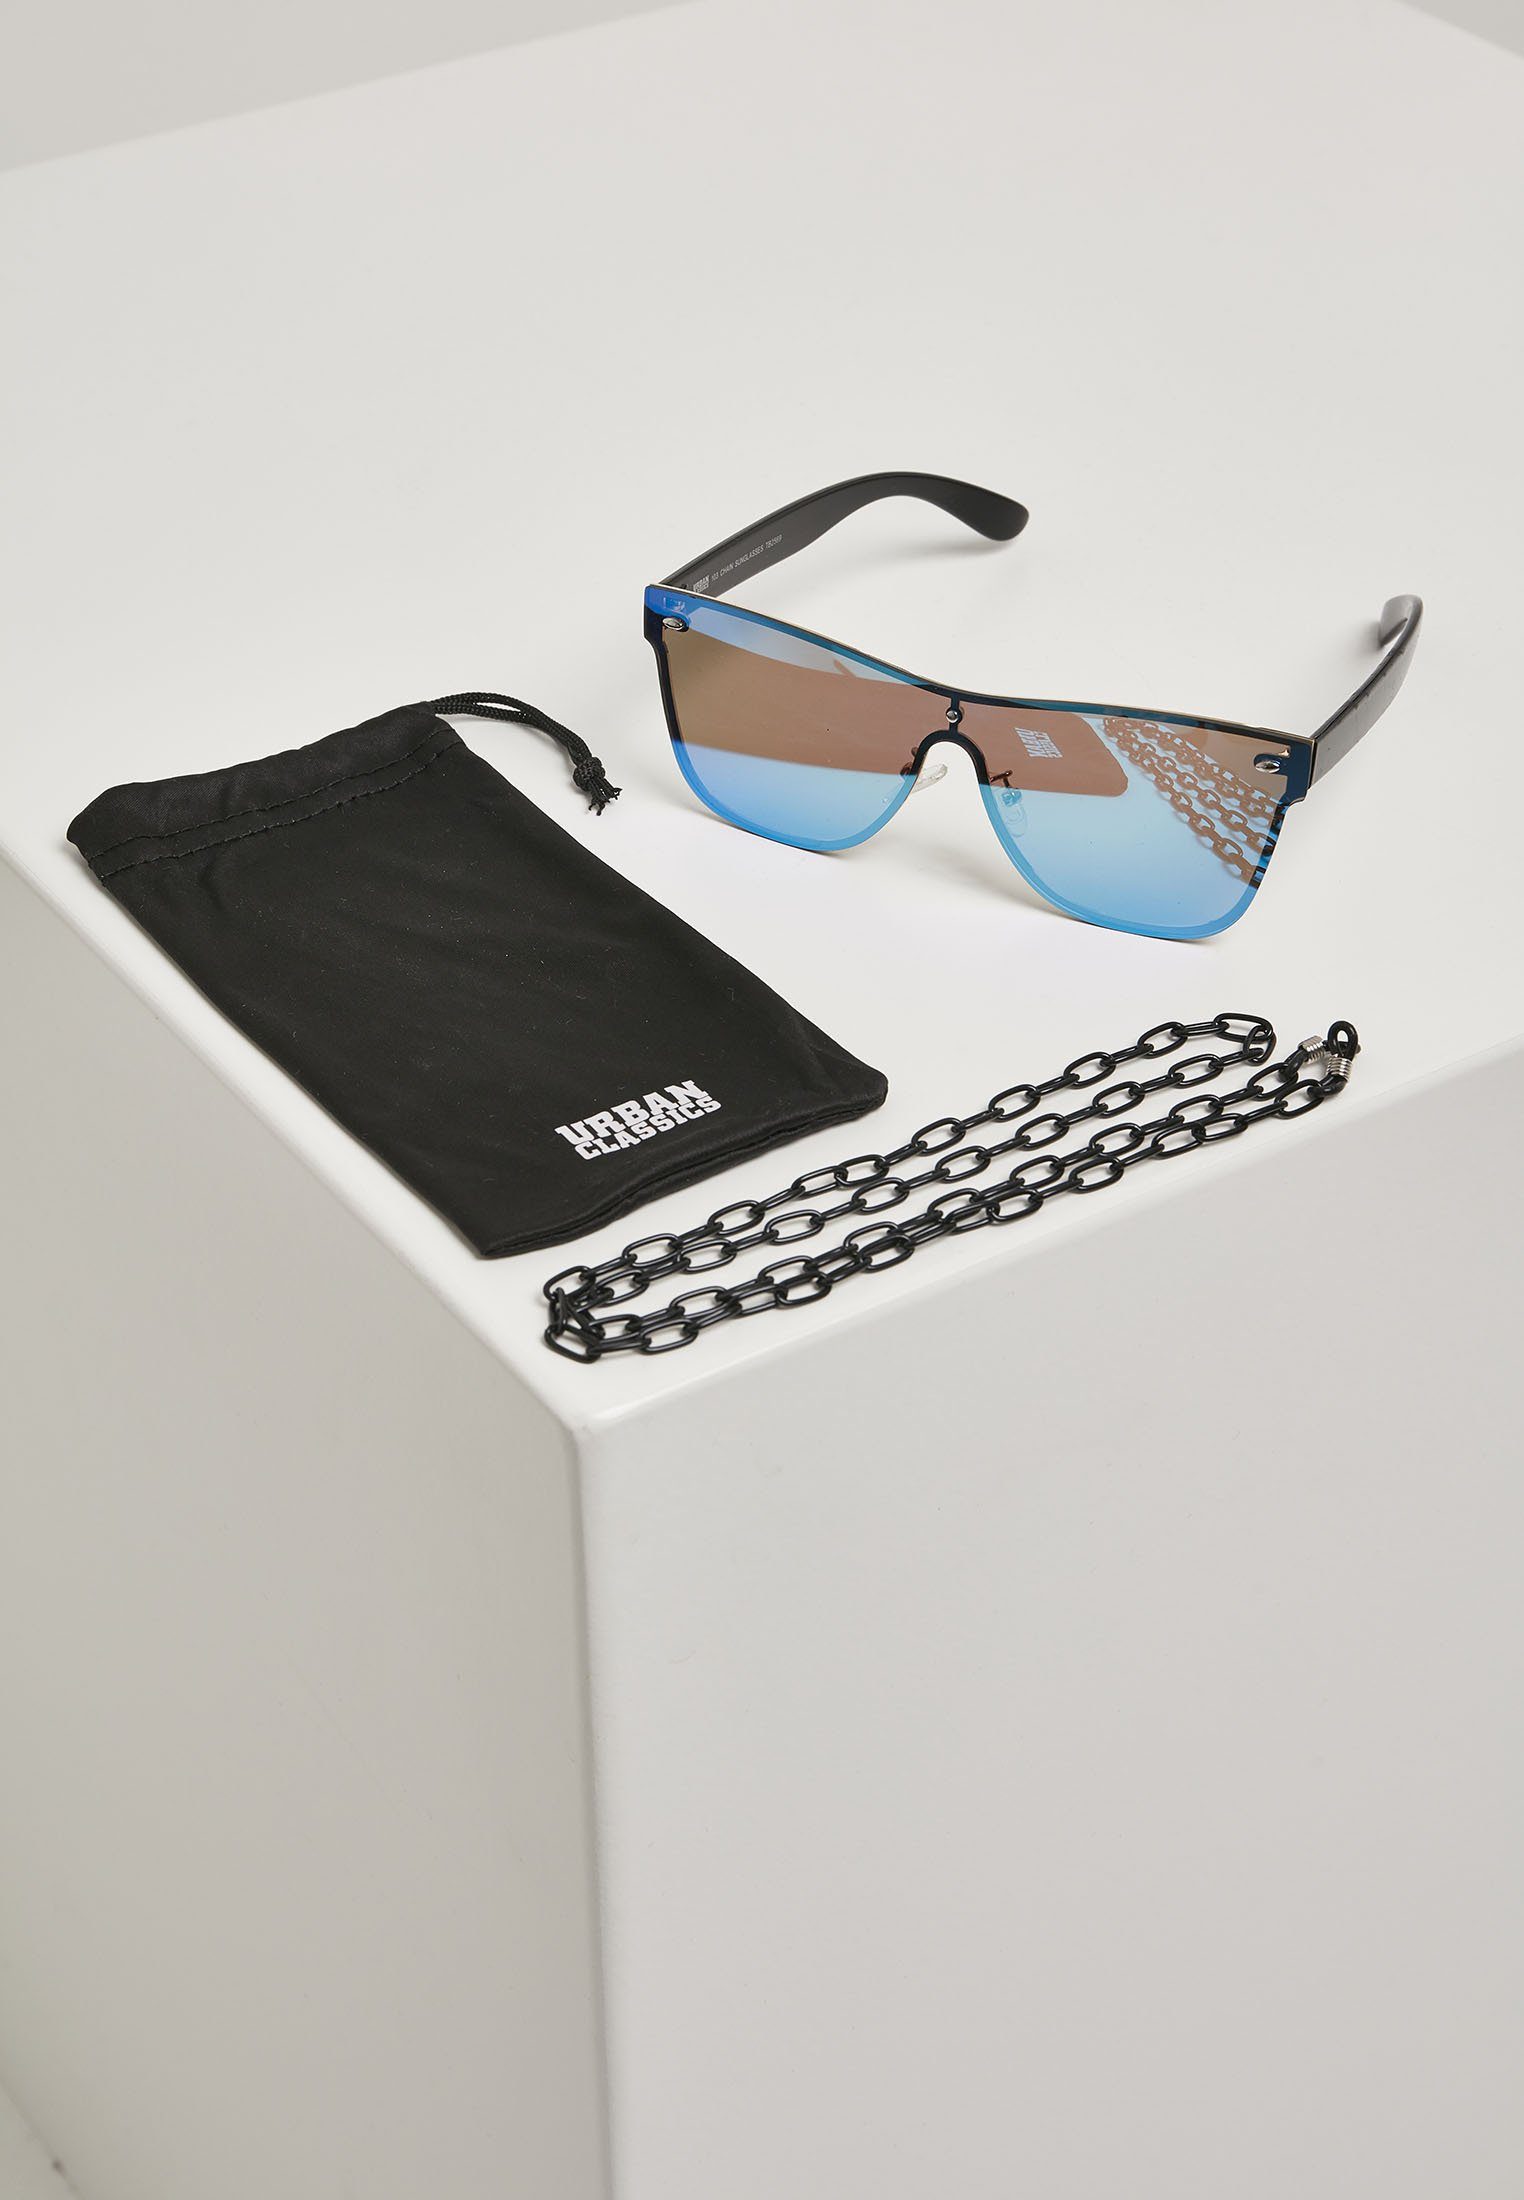 Neu eingeführt URBAN CLASSICS Sonnenbrille Unisex 103 blk/blue Sunglasses Chain